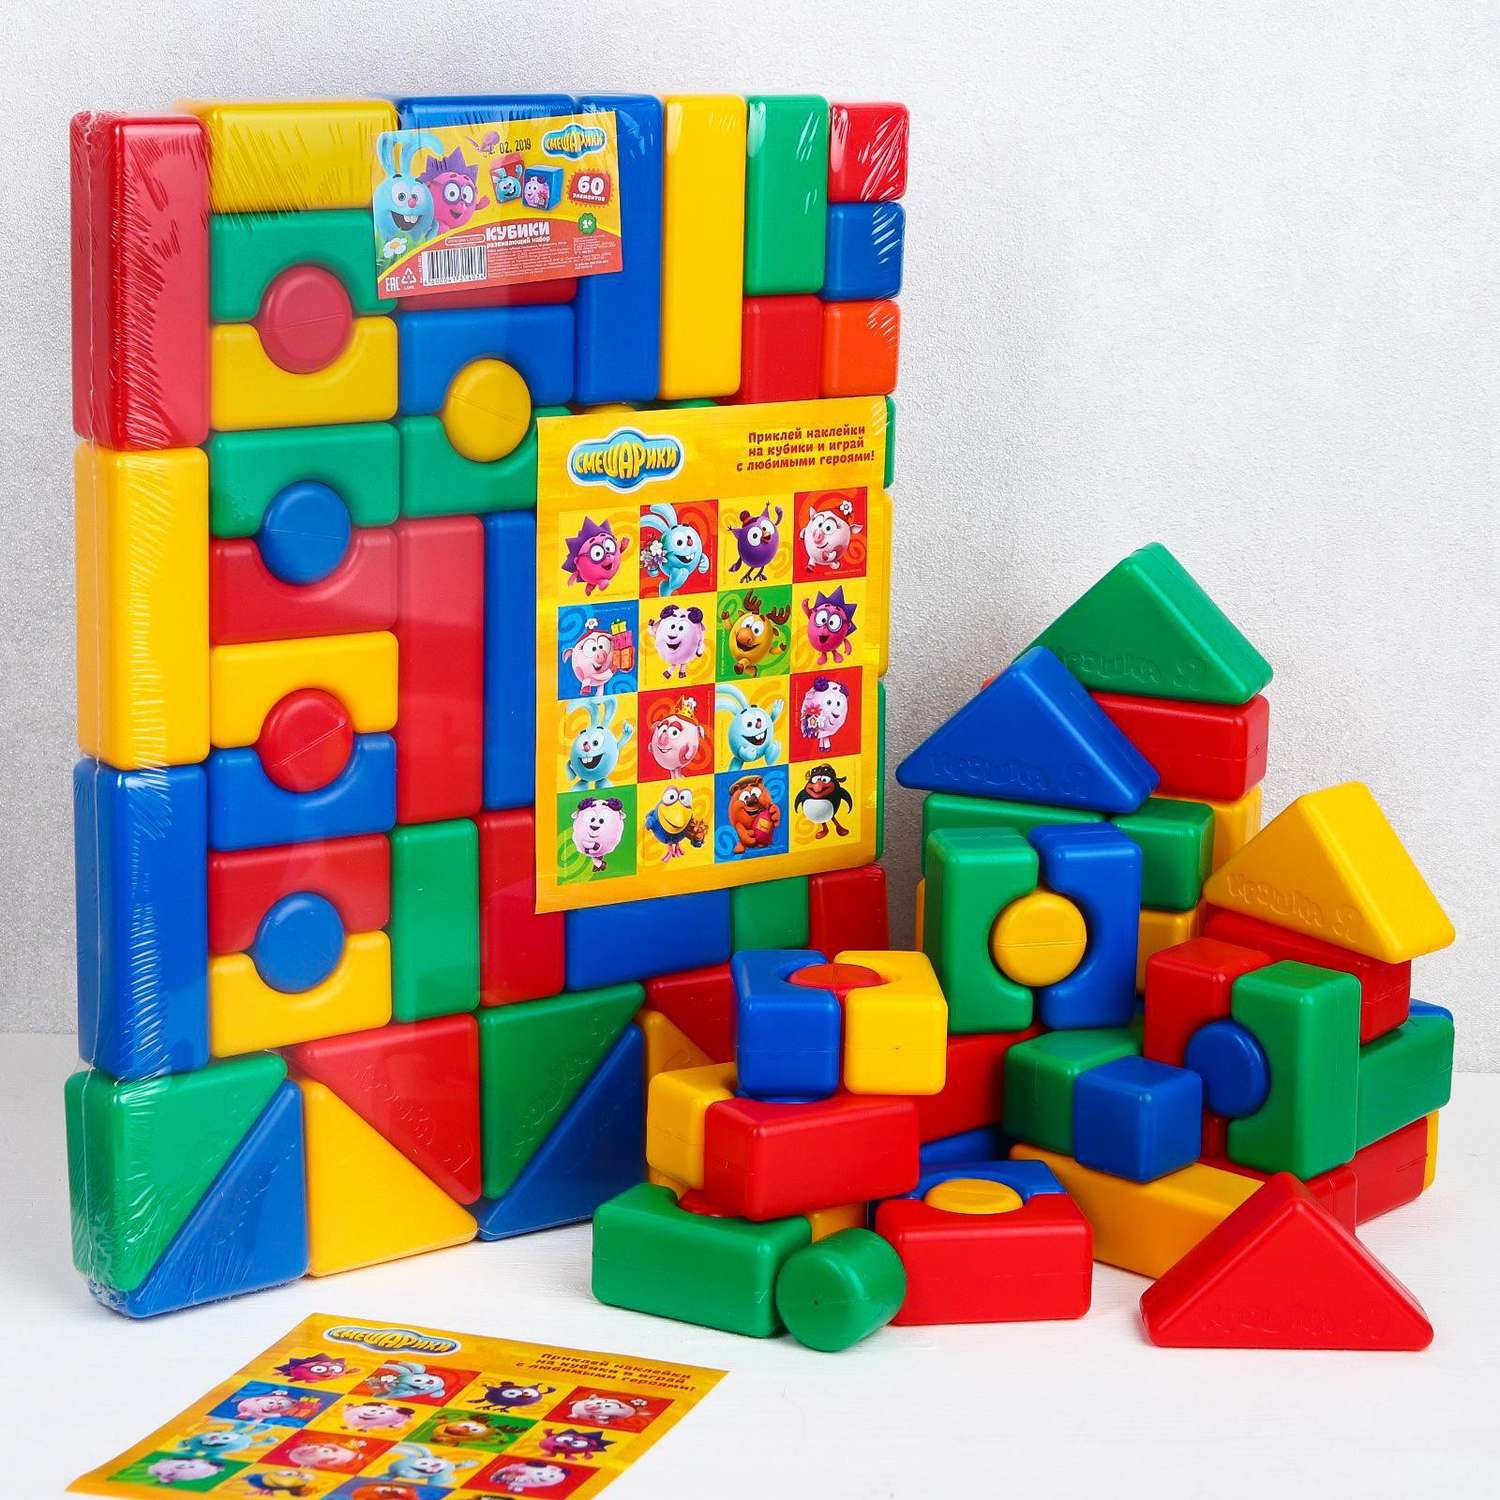 Набор кубиков Соломон Цветных «Смешарики». 60 элементов. кубик 4 х 4 см - фото 2